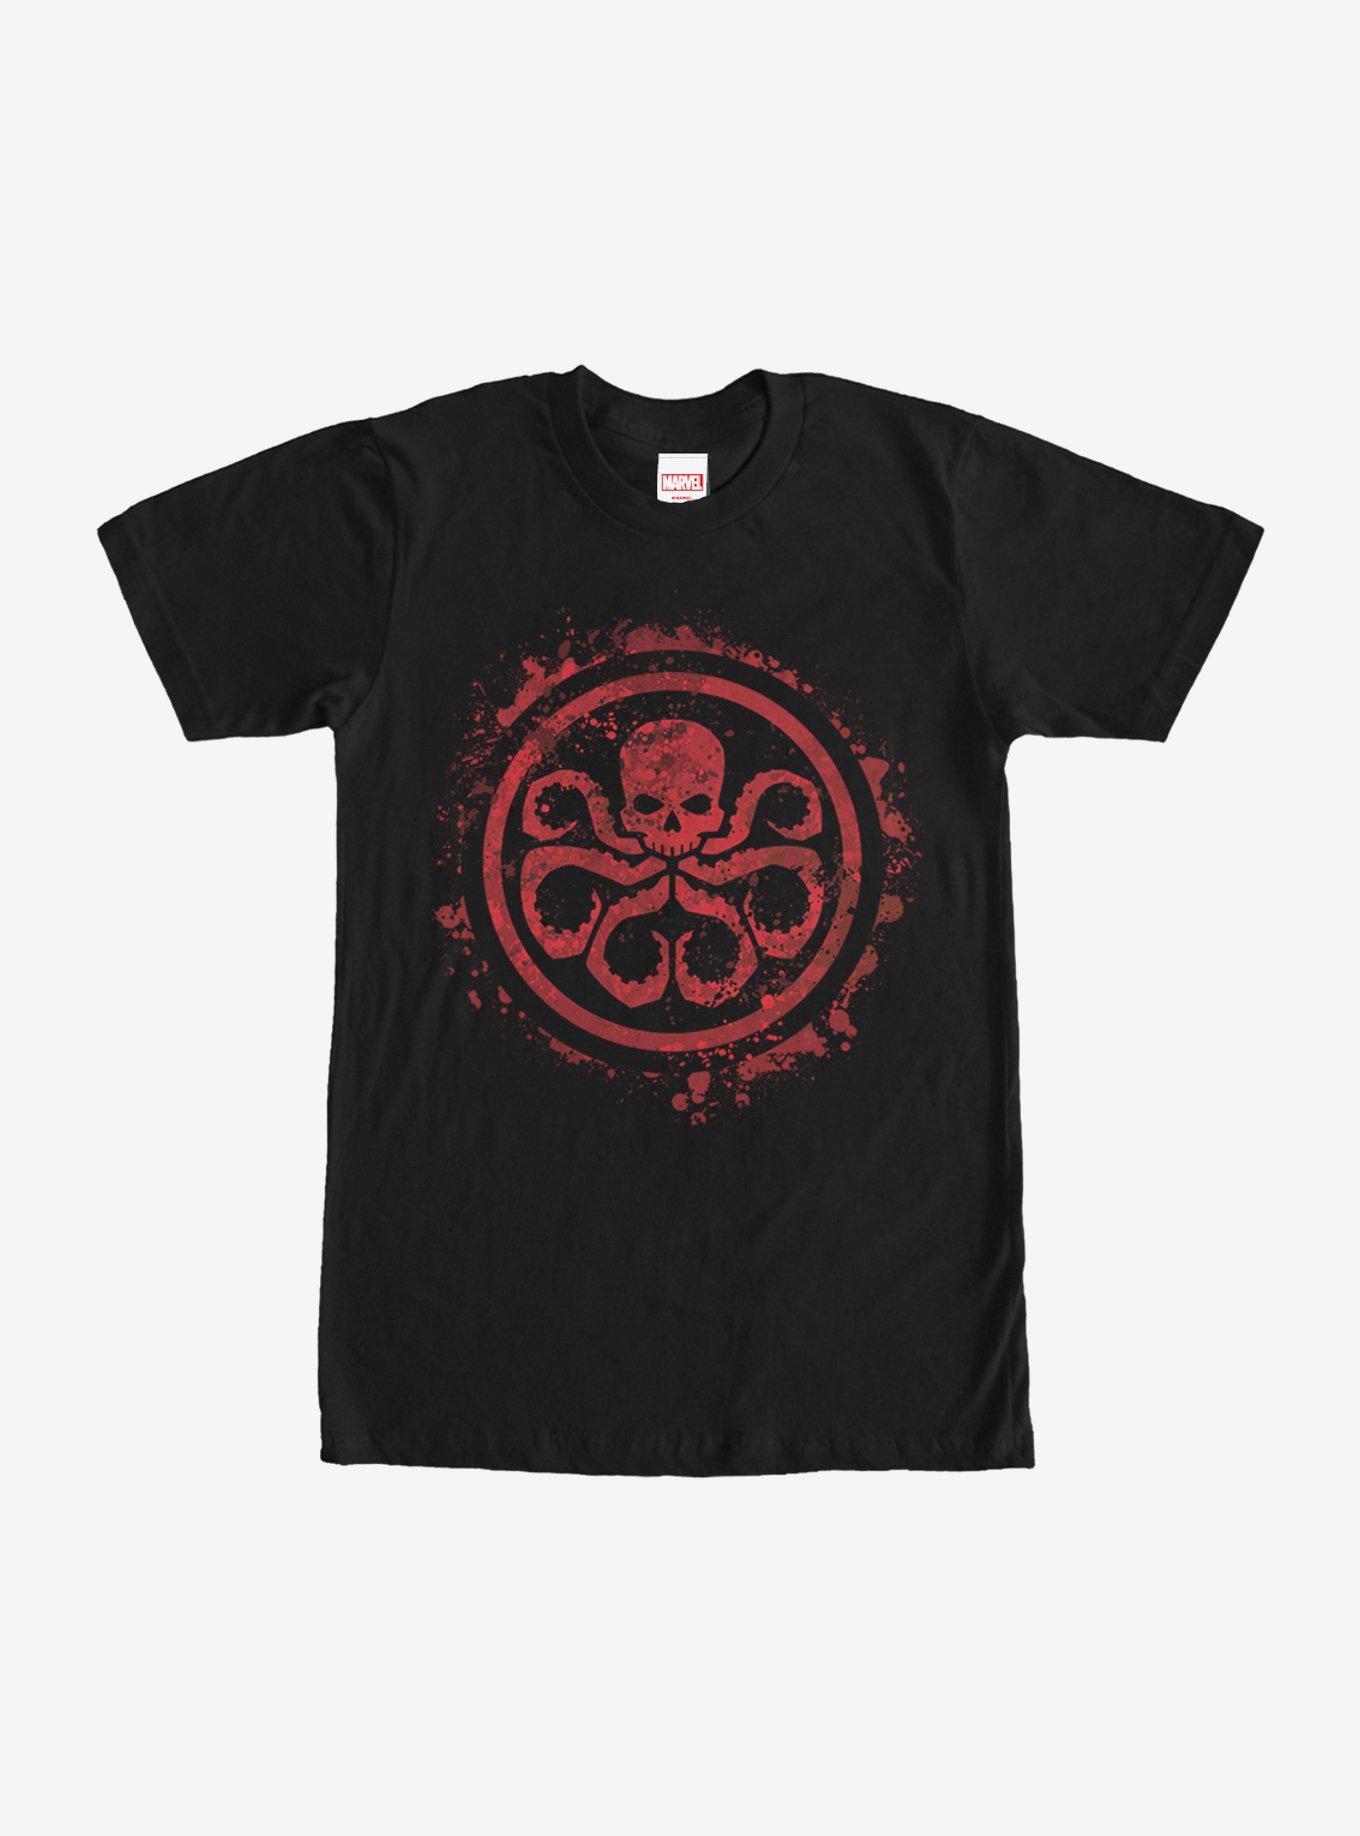 Marvel Hail Hydra Logo T-Shirt, BLACK, hi-res